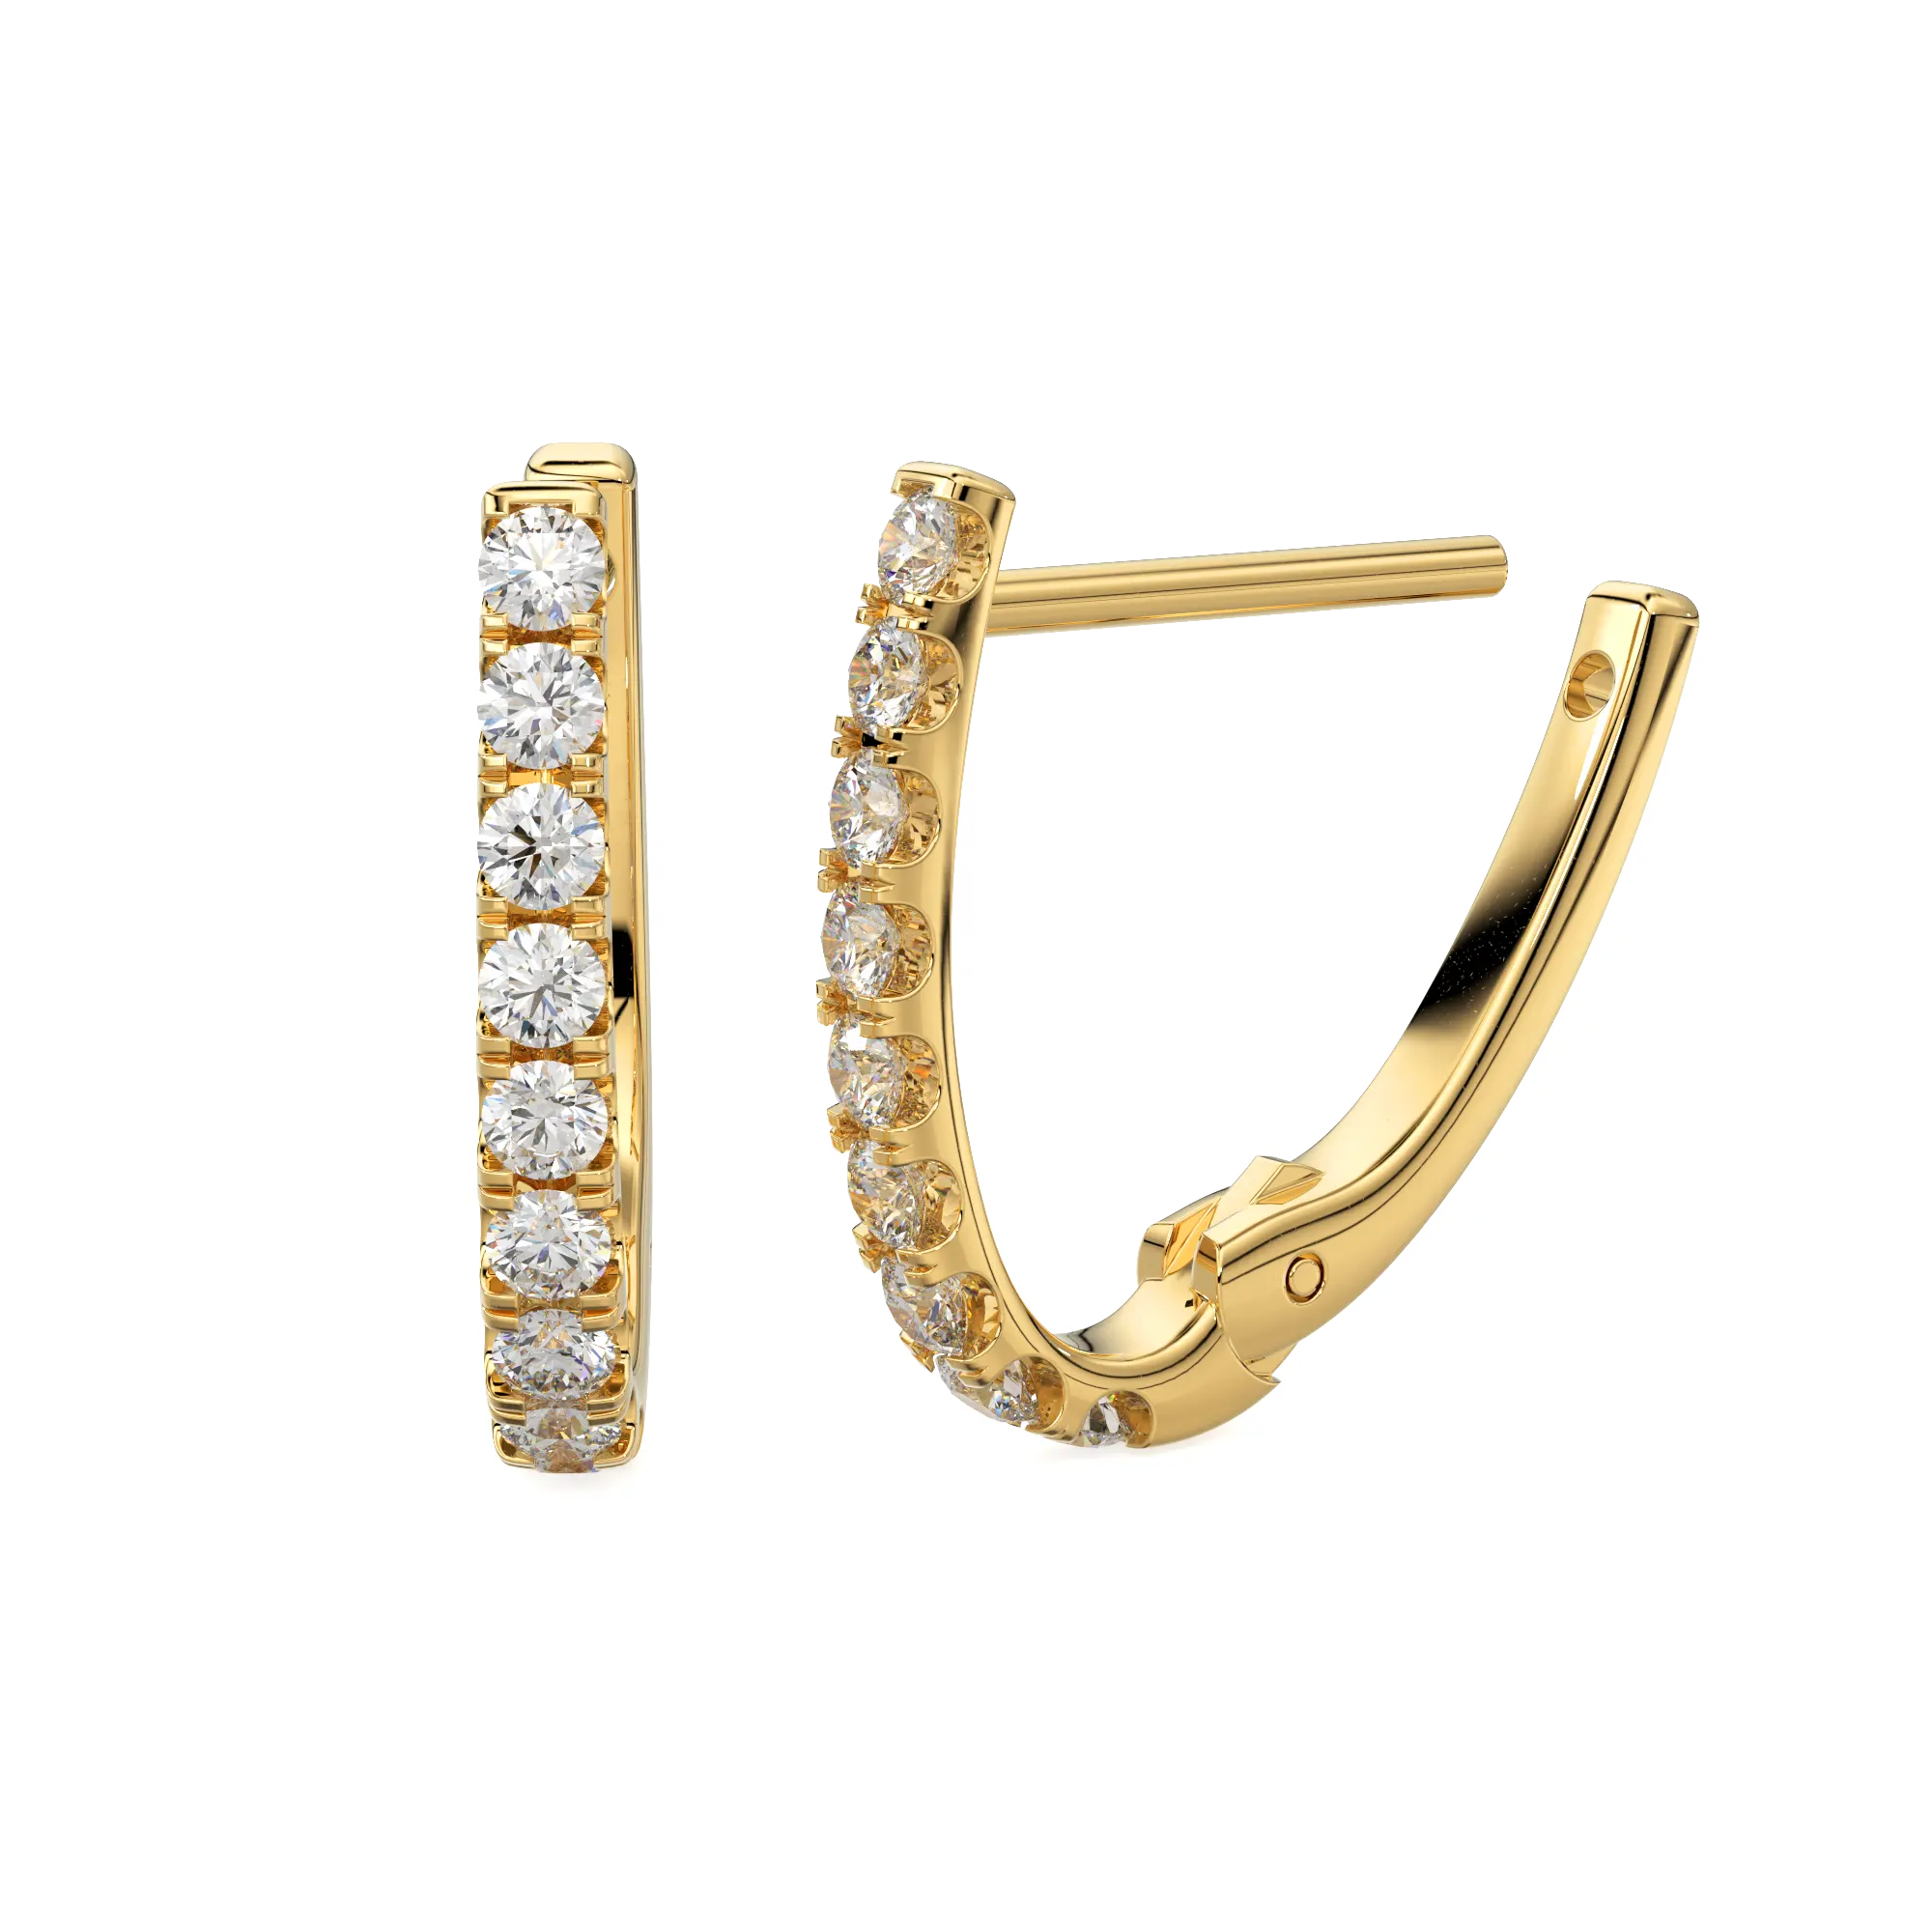 Pave Natural Diamonds 14 Karat massives Gold Huggies Minimalist Brilliant Round Cut 18 Karat hand gefertigte Ohrringe Winziger Schmuck